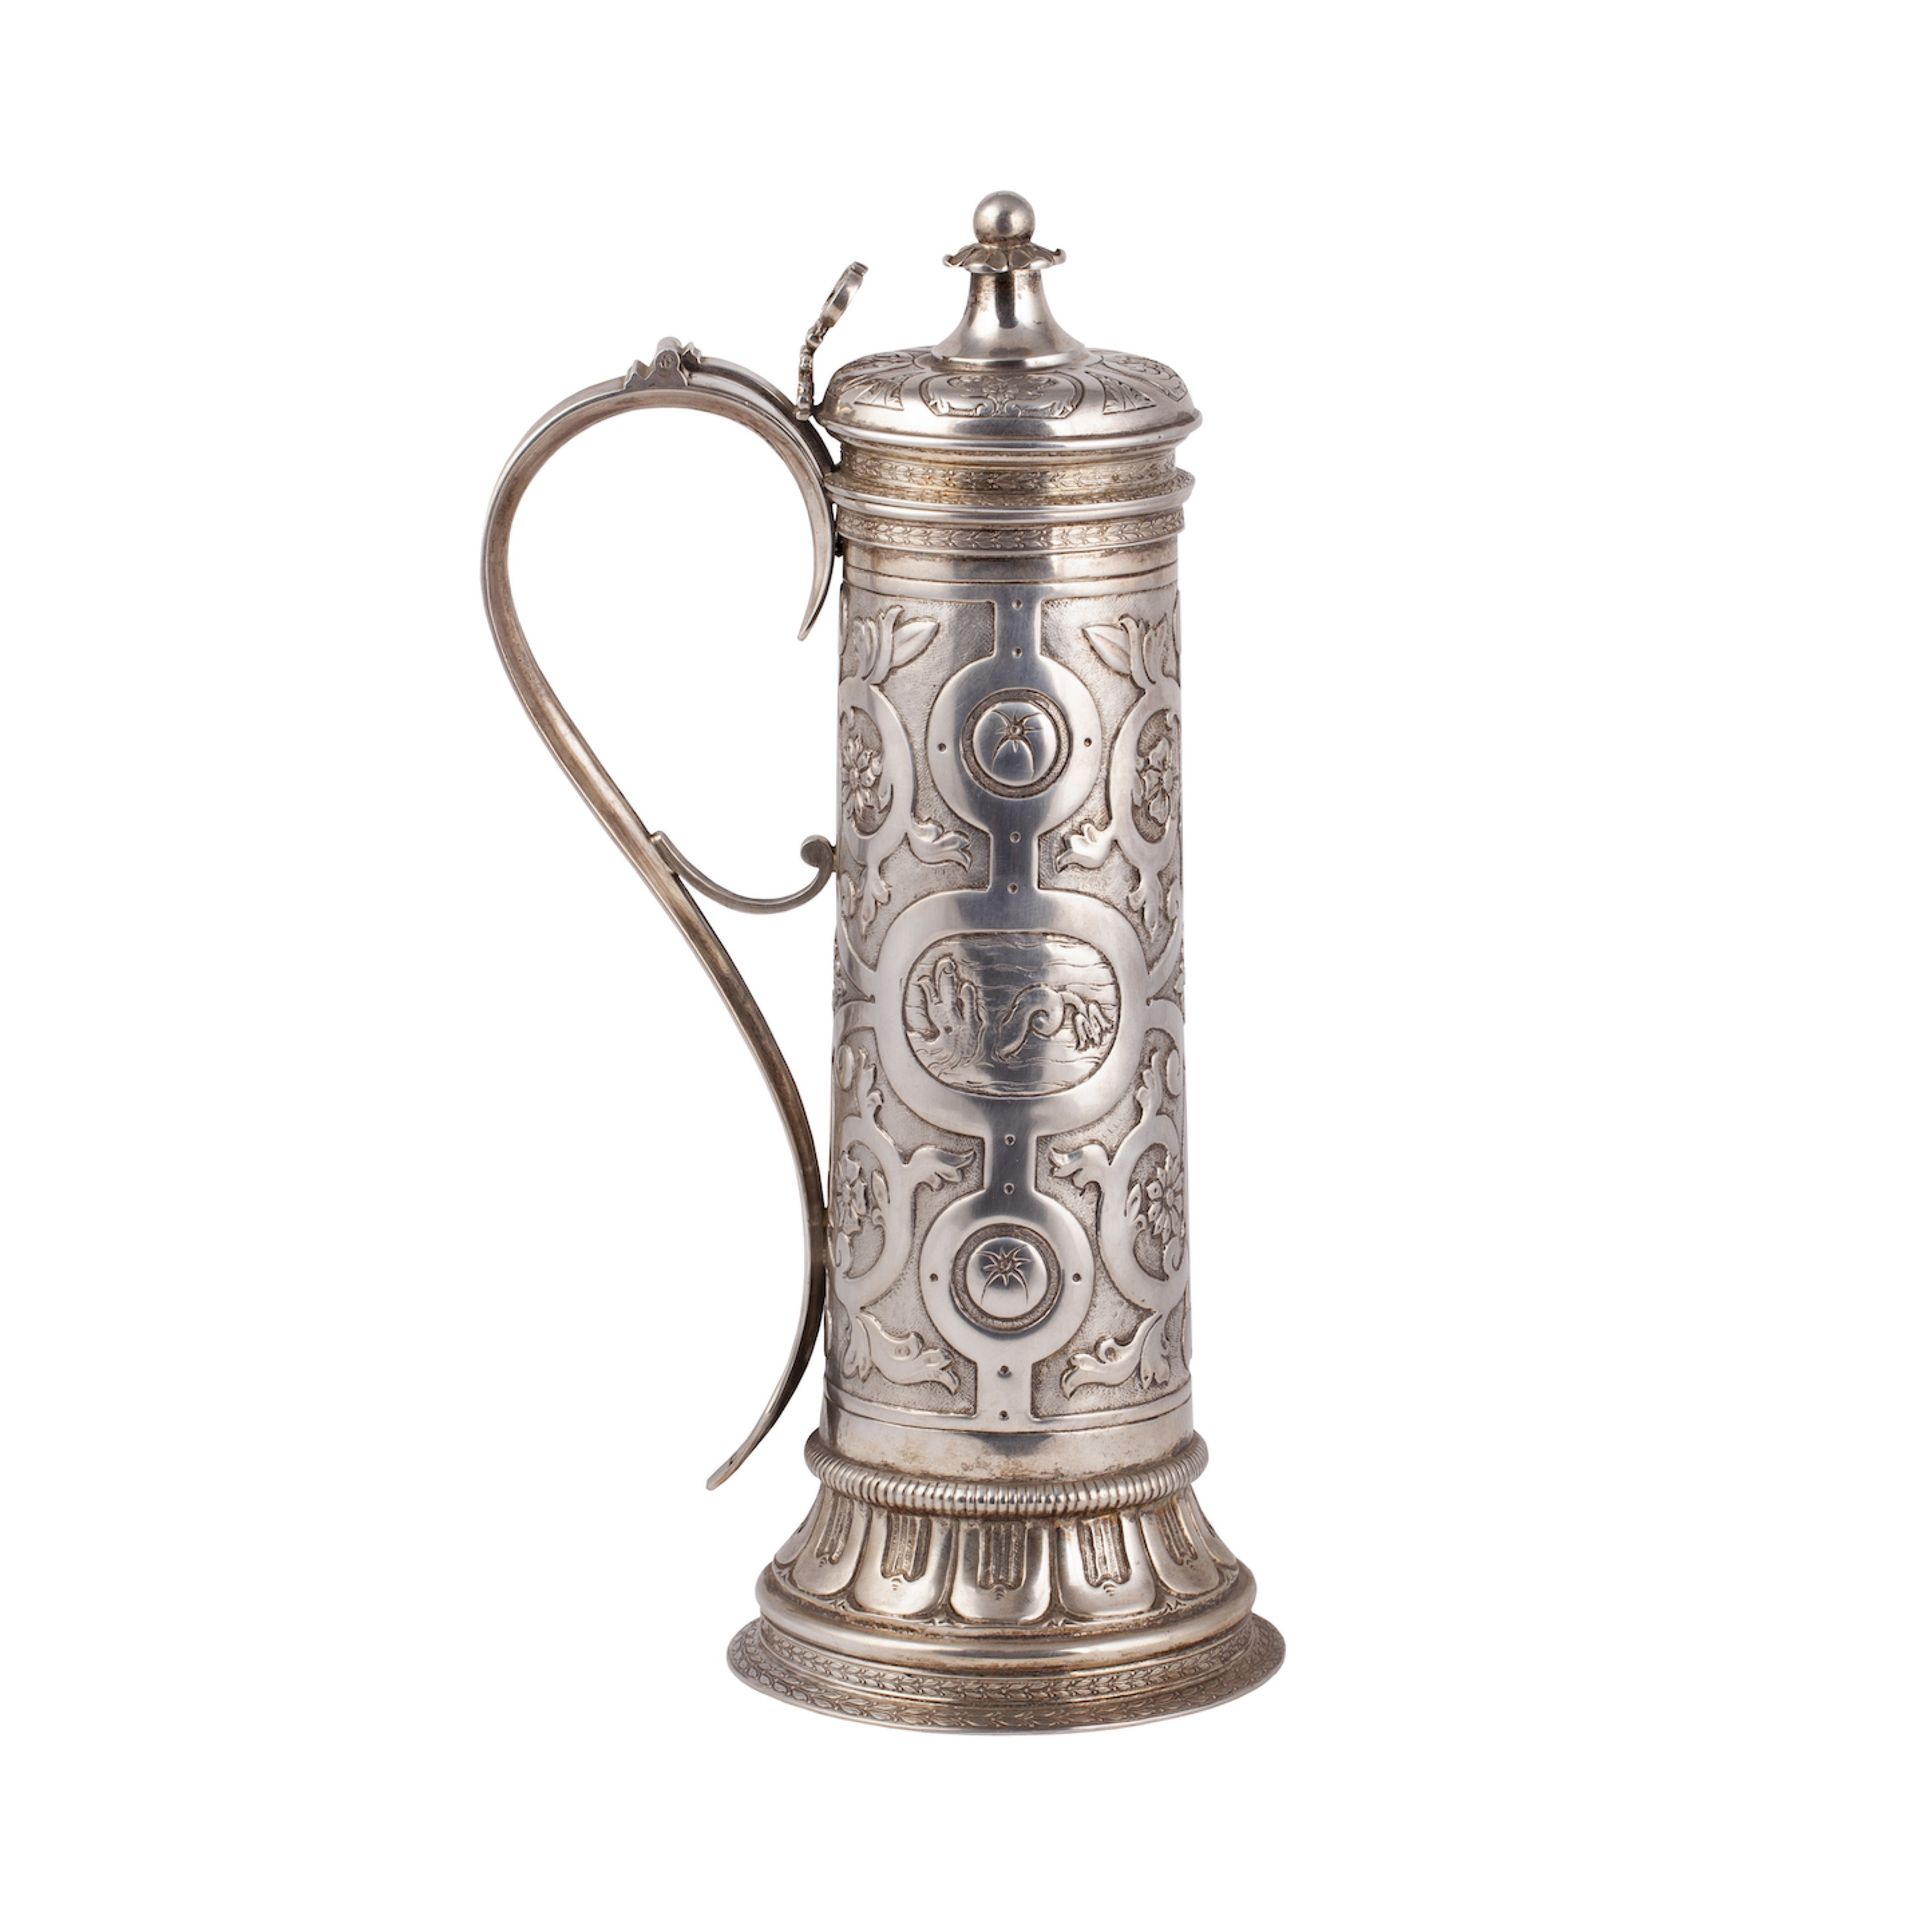 Null 新文艺复兴风格的巨大杯子。银，铸造，压花，镀金。I. Olsenius大师代表E.I. Grachev公司。彼得堡。1886年。尺寸：36 x 20 &hellip;